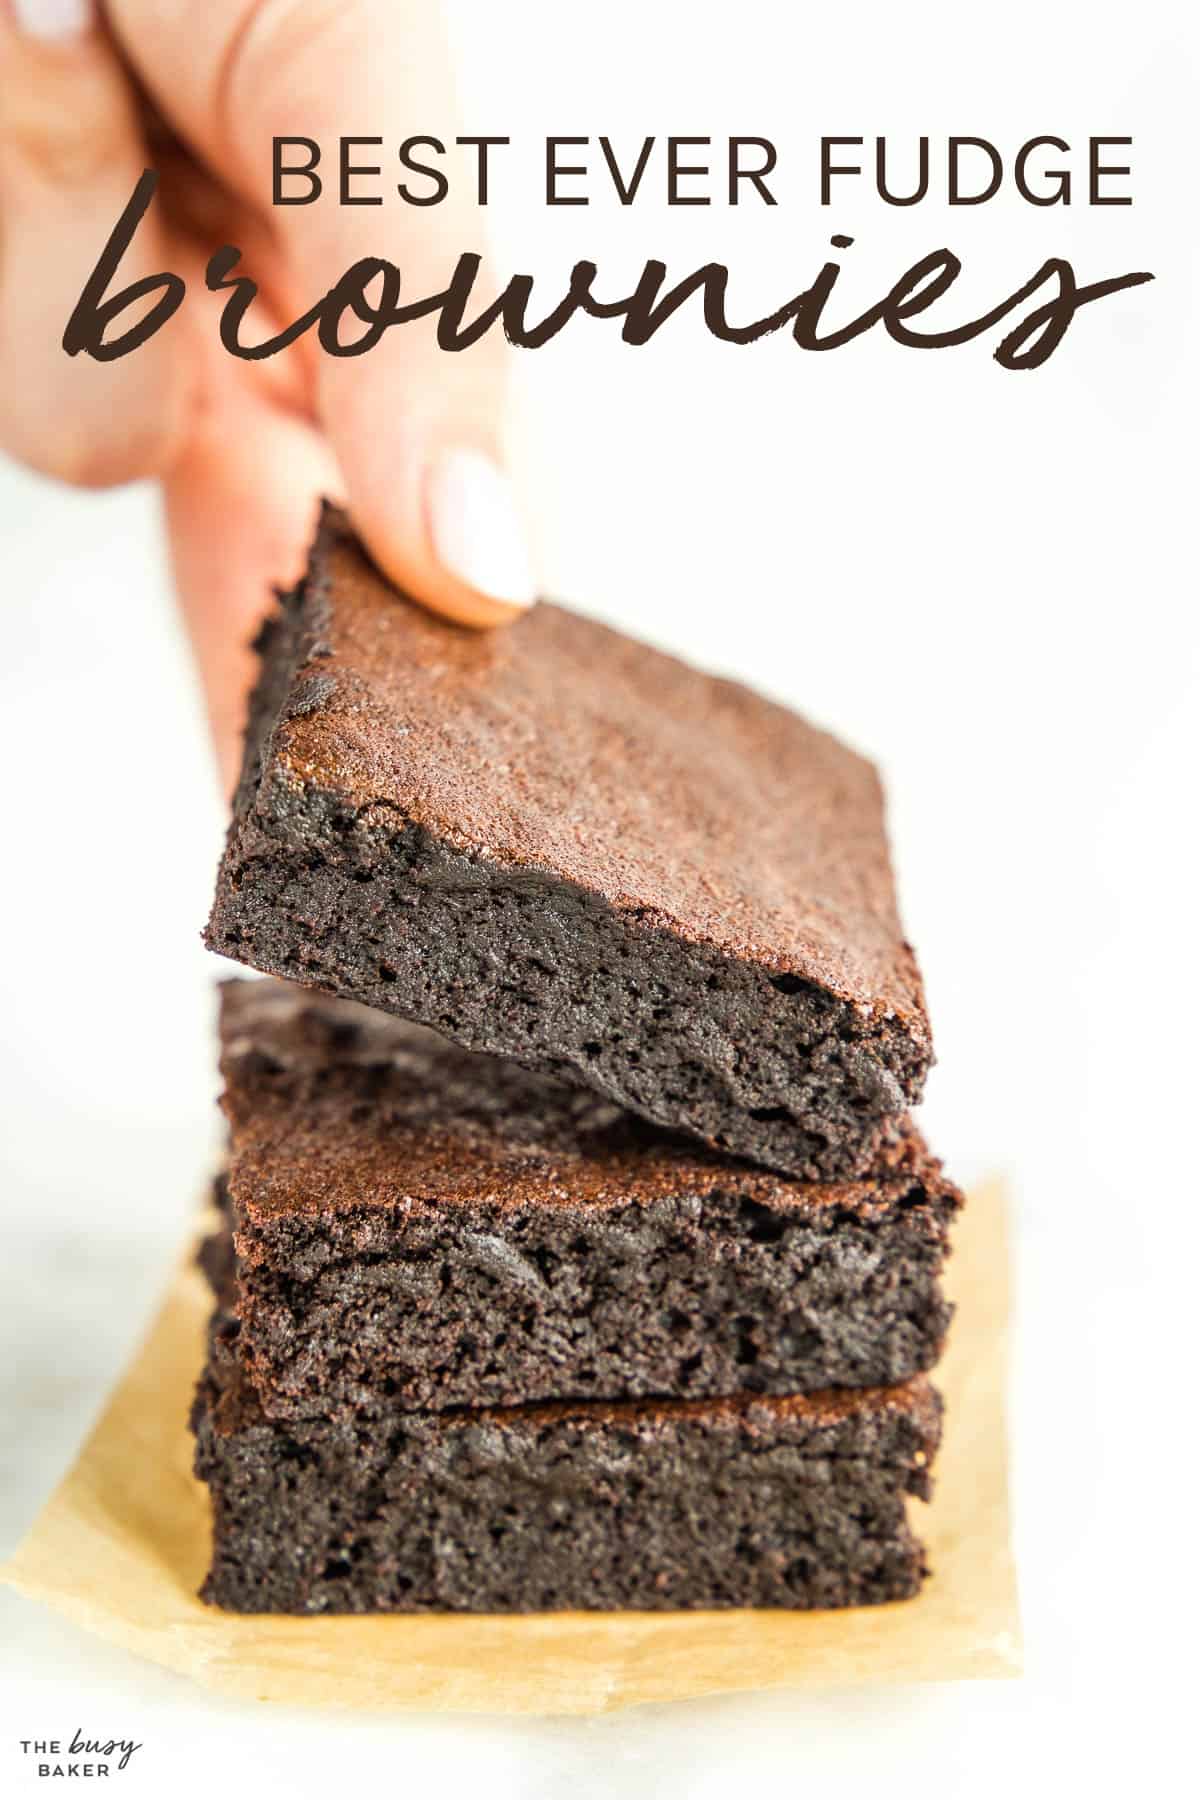 Easy Brownies Recipe